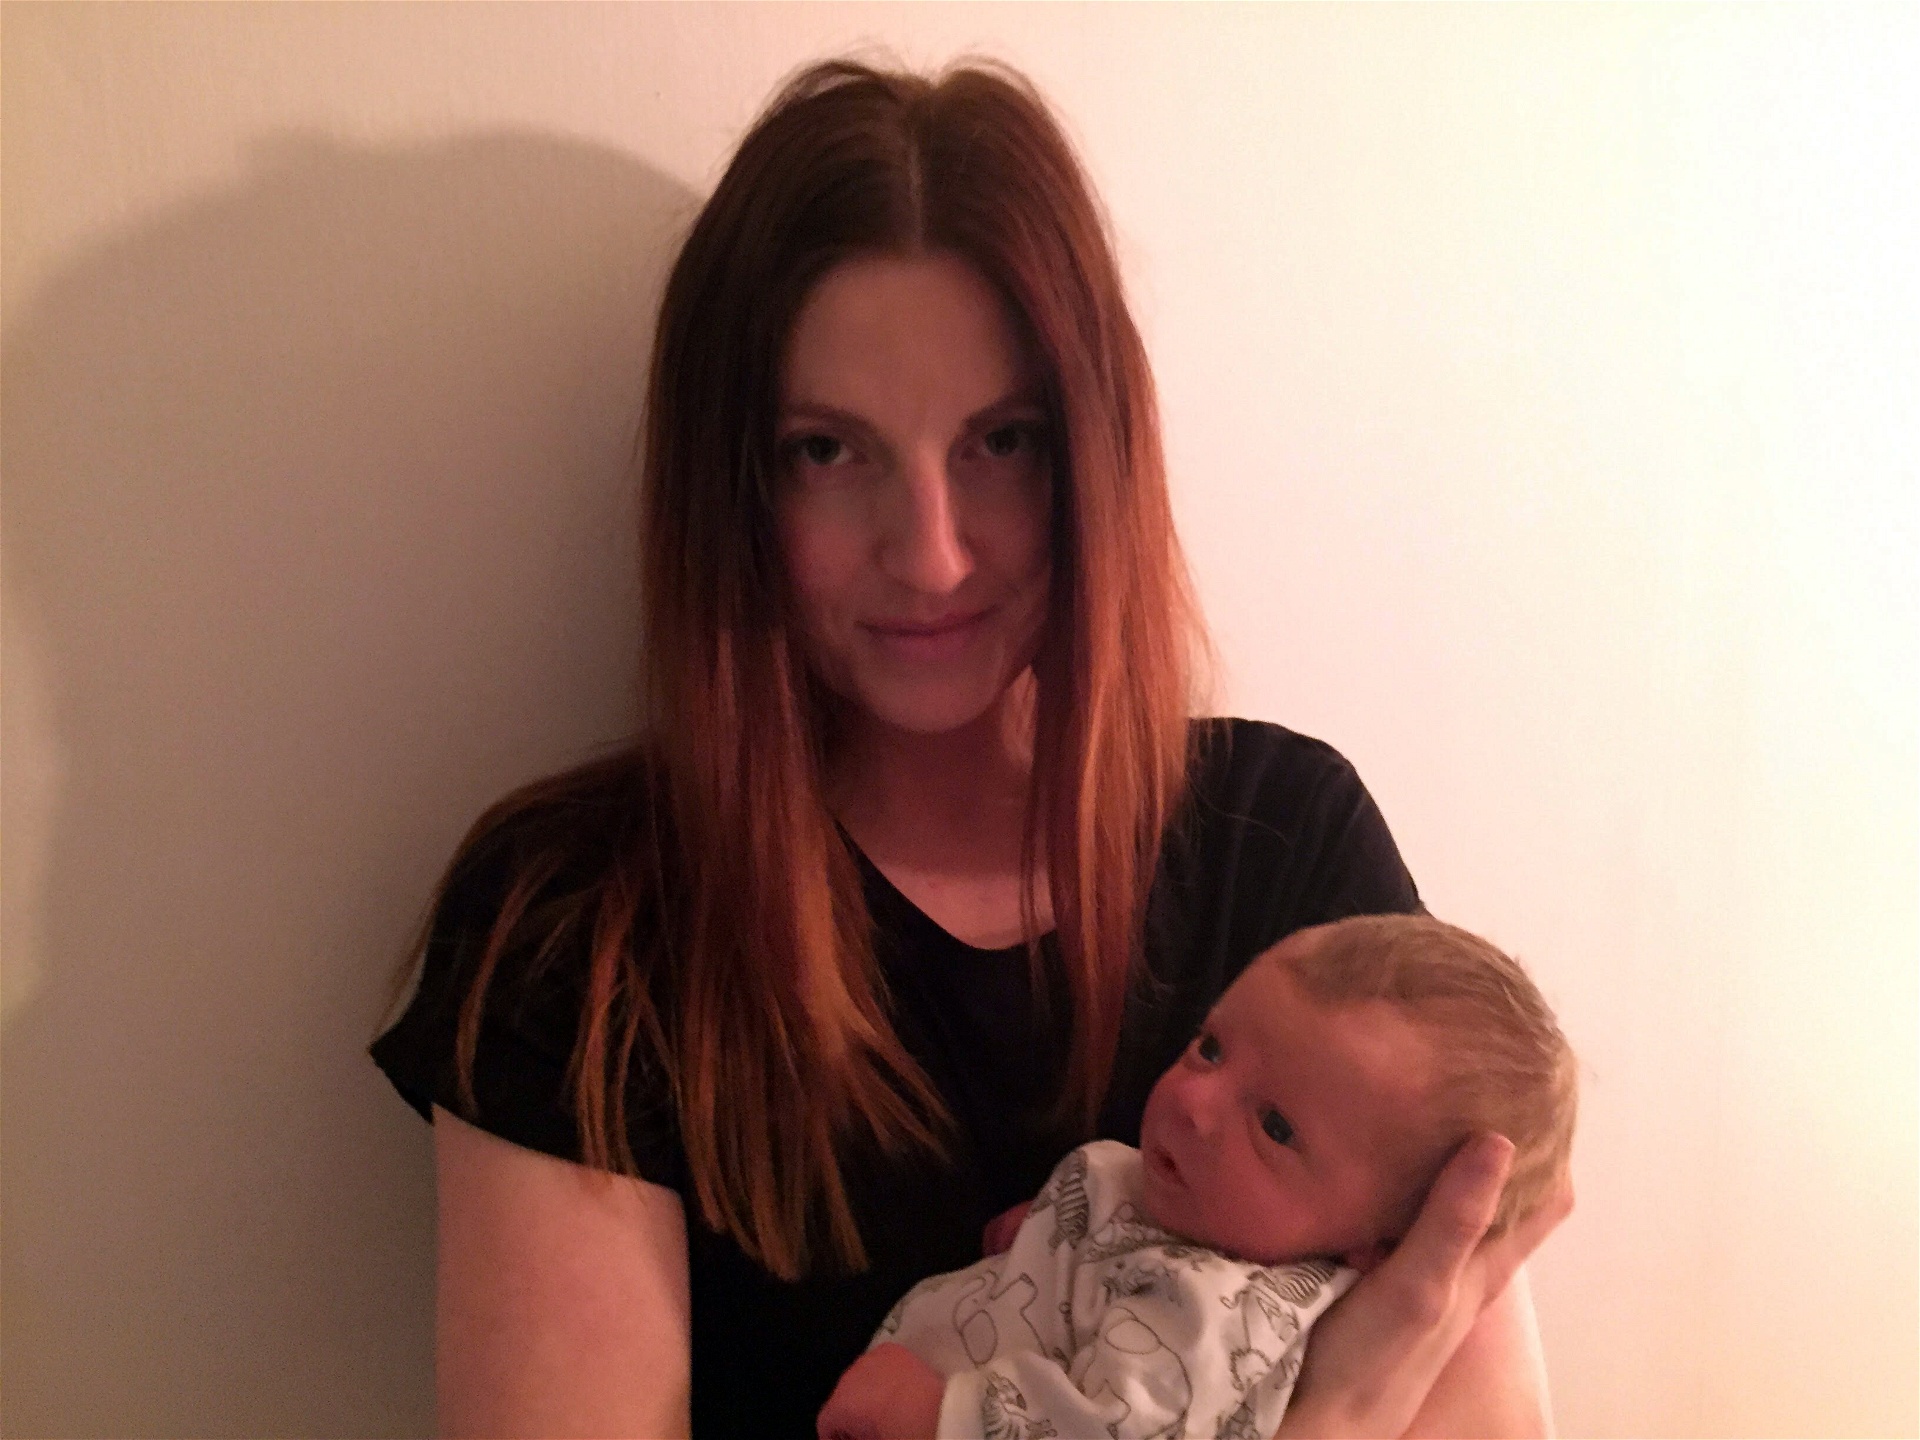 Anna-Marica Ek tillsammans med hennes två veckor gamle son.